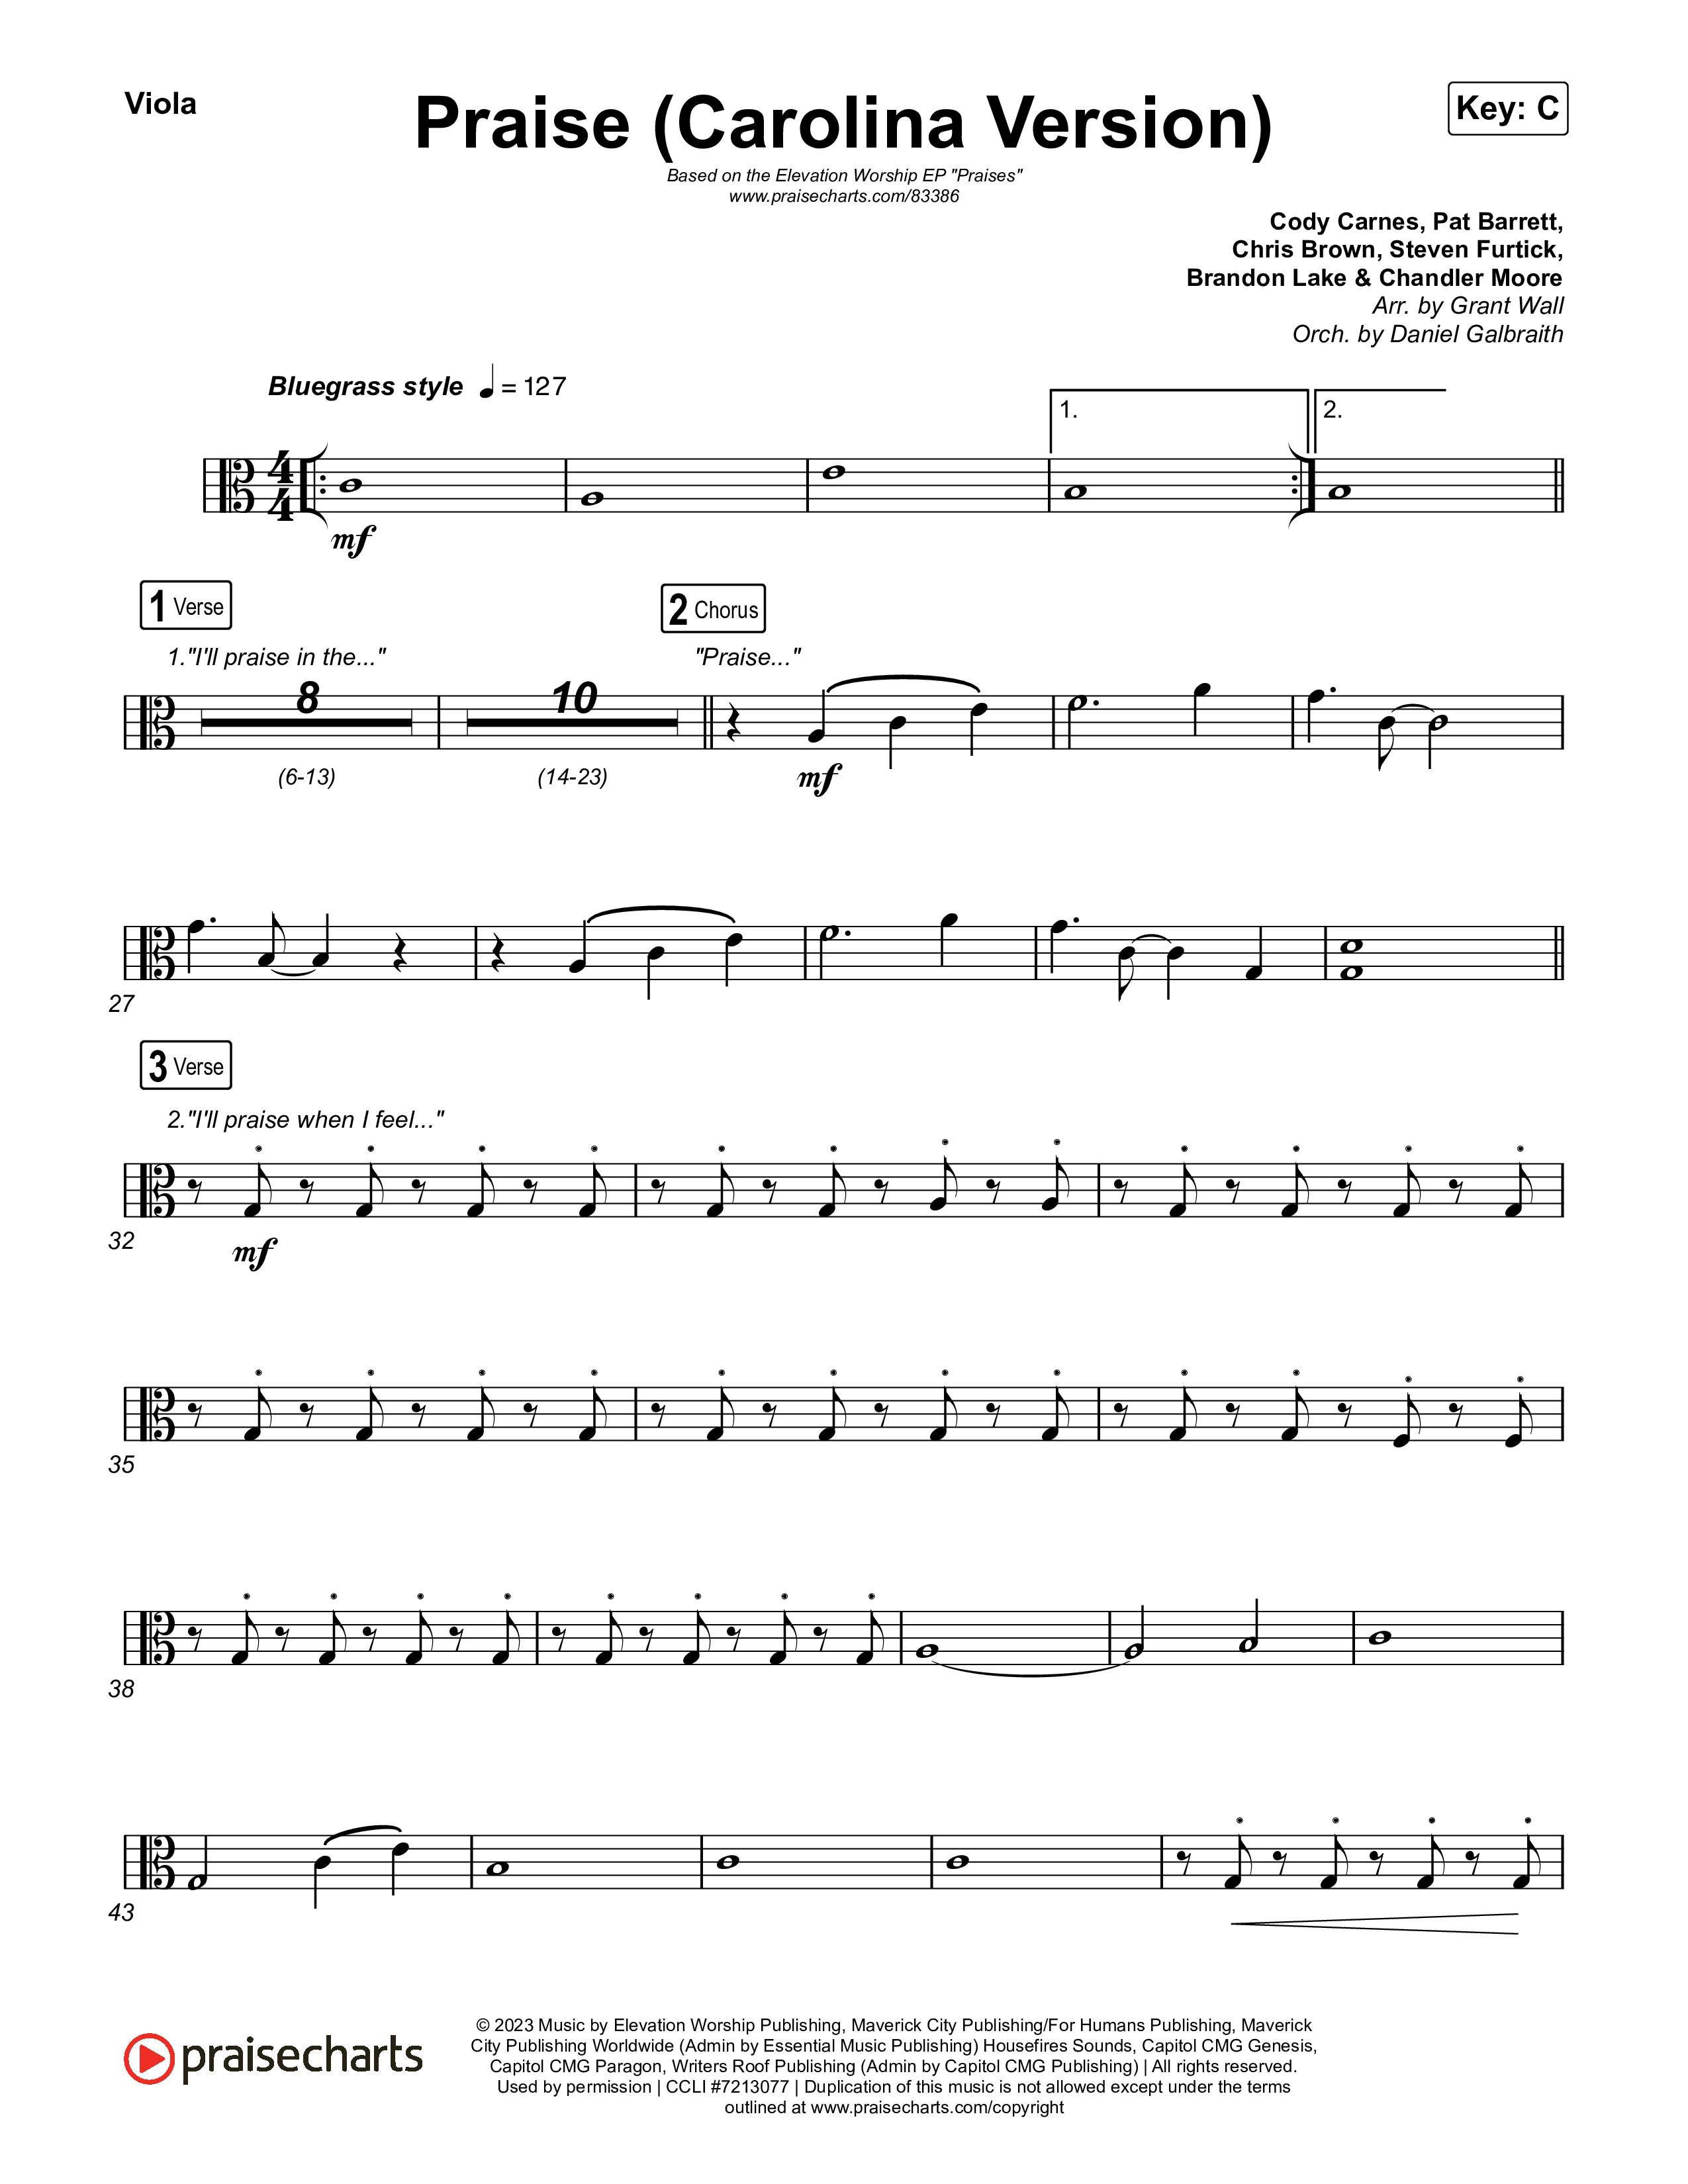 Praise (Carolina Version) Viola (Elevation Worship)